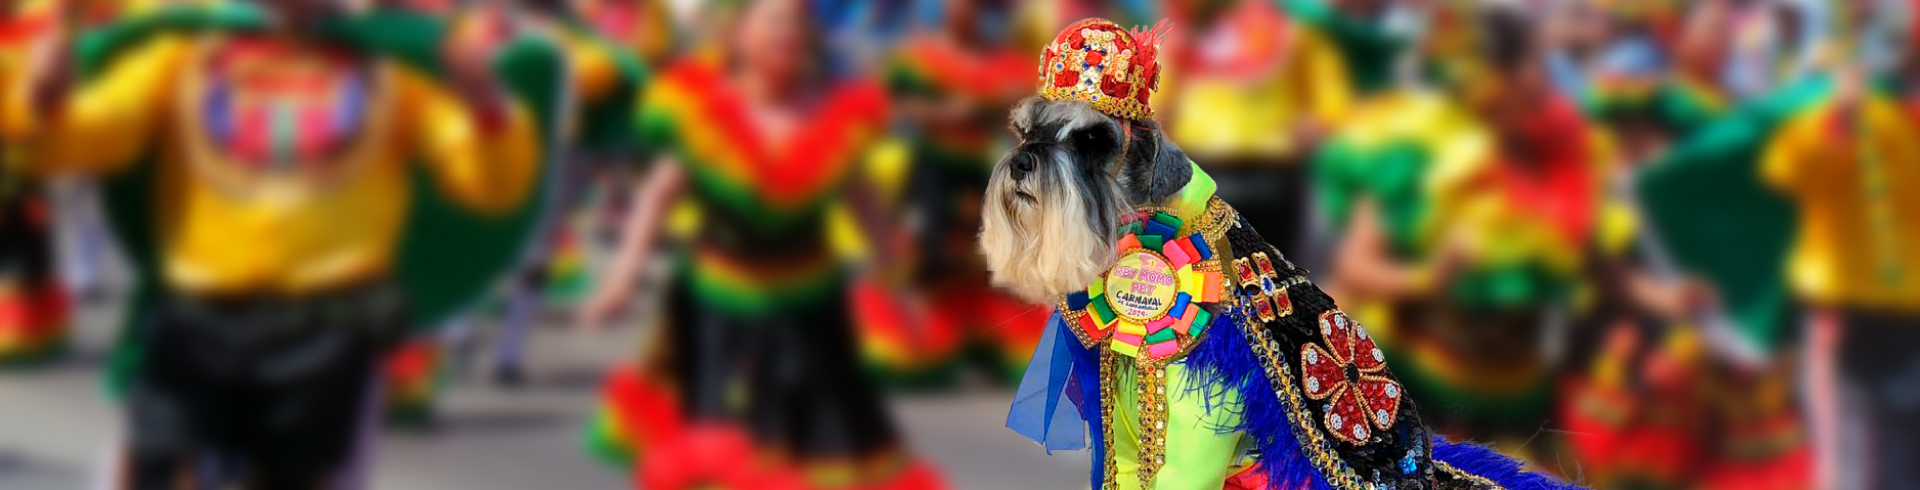 El carnaval de Barranquilla tiene Rey Momo Canino-Petys